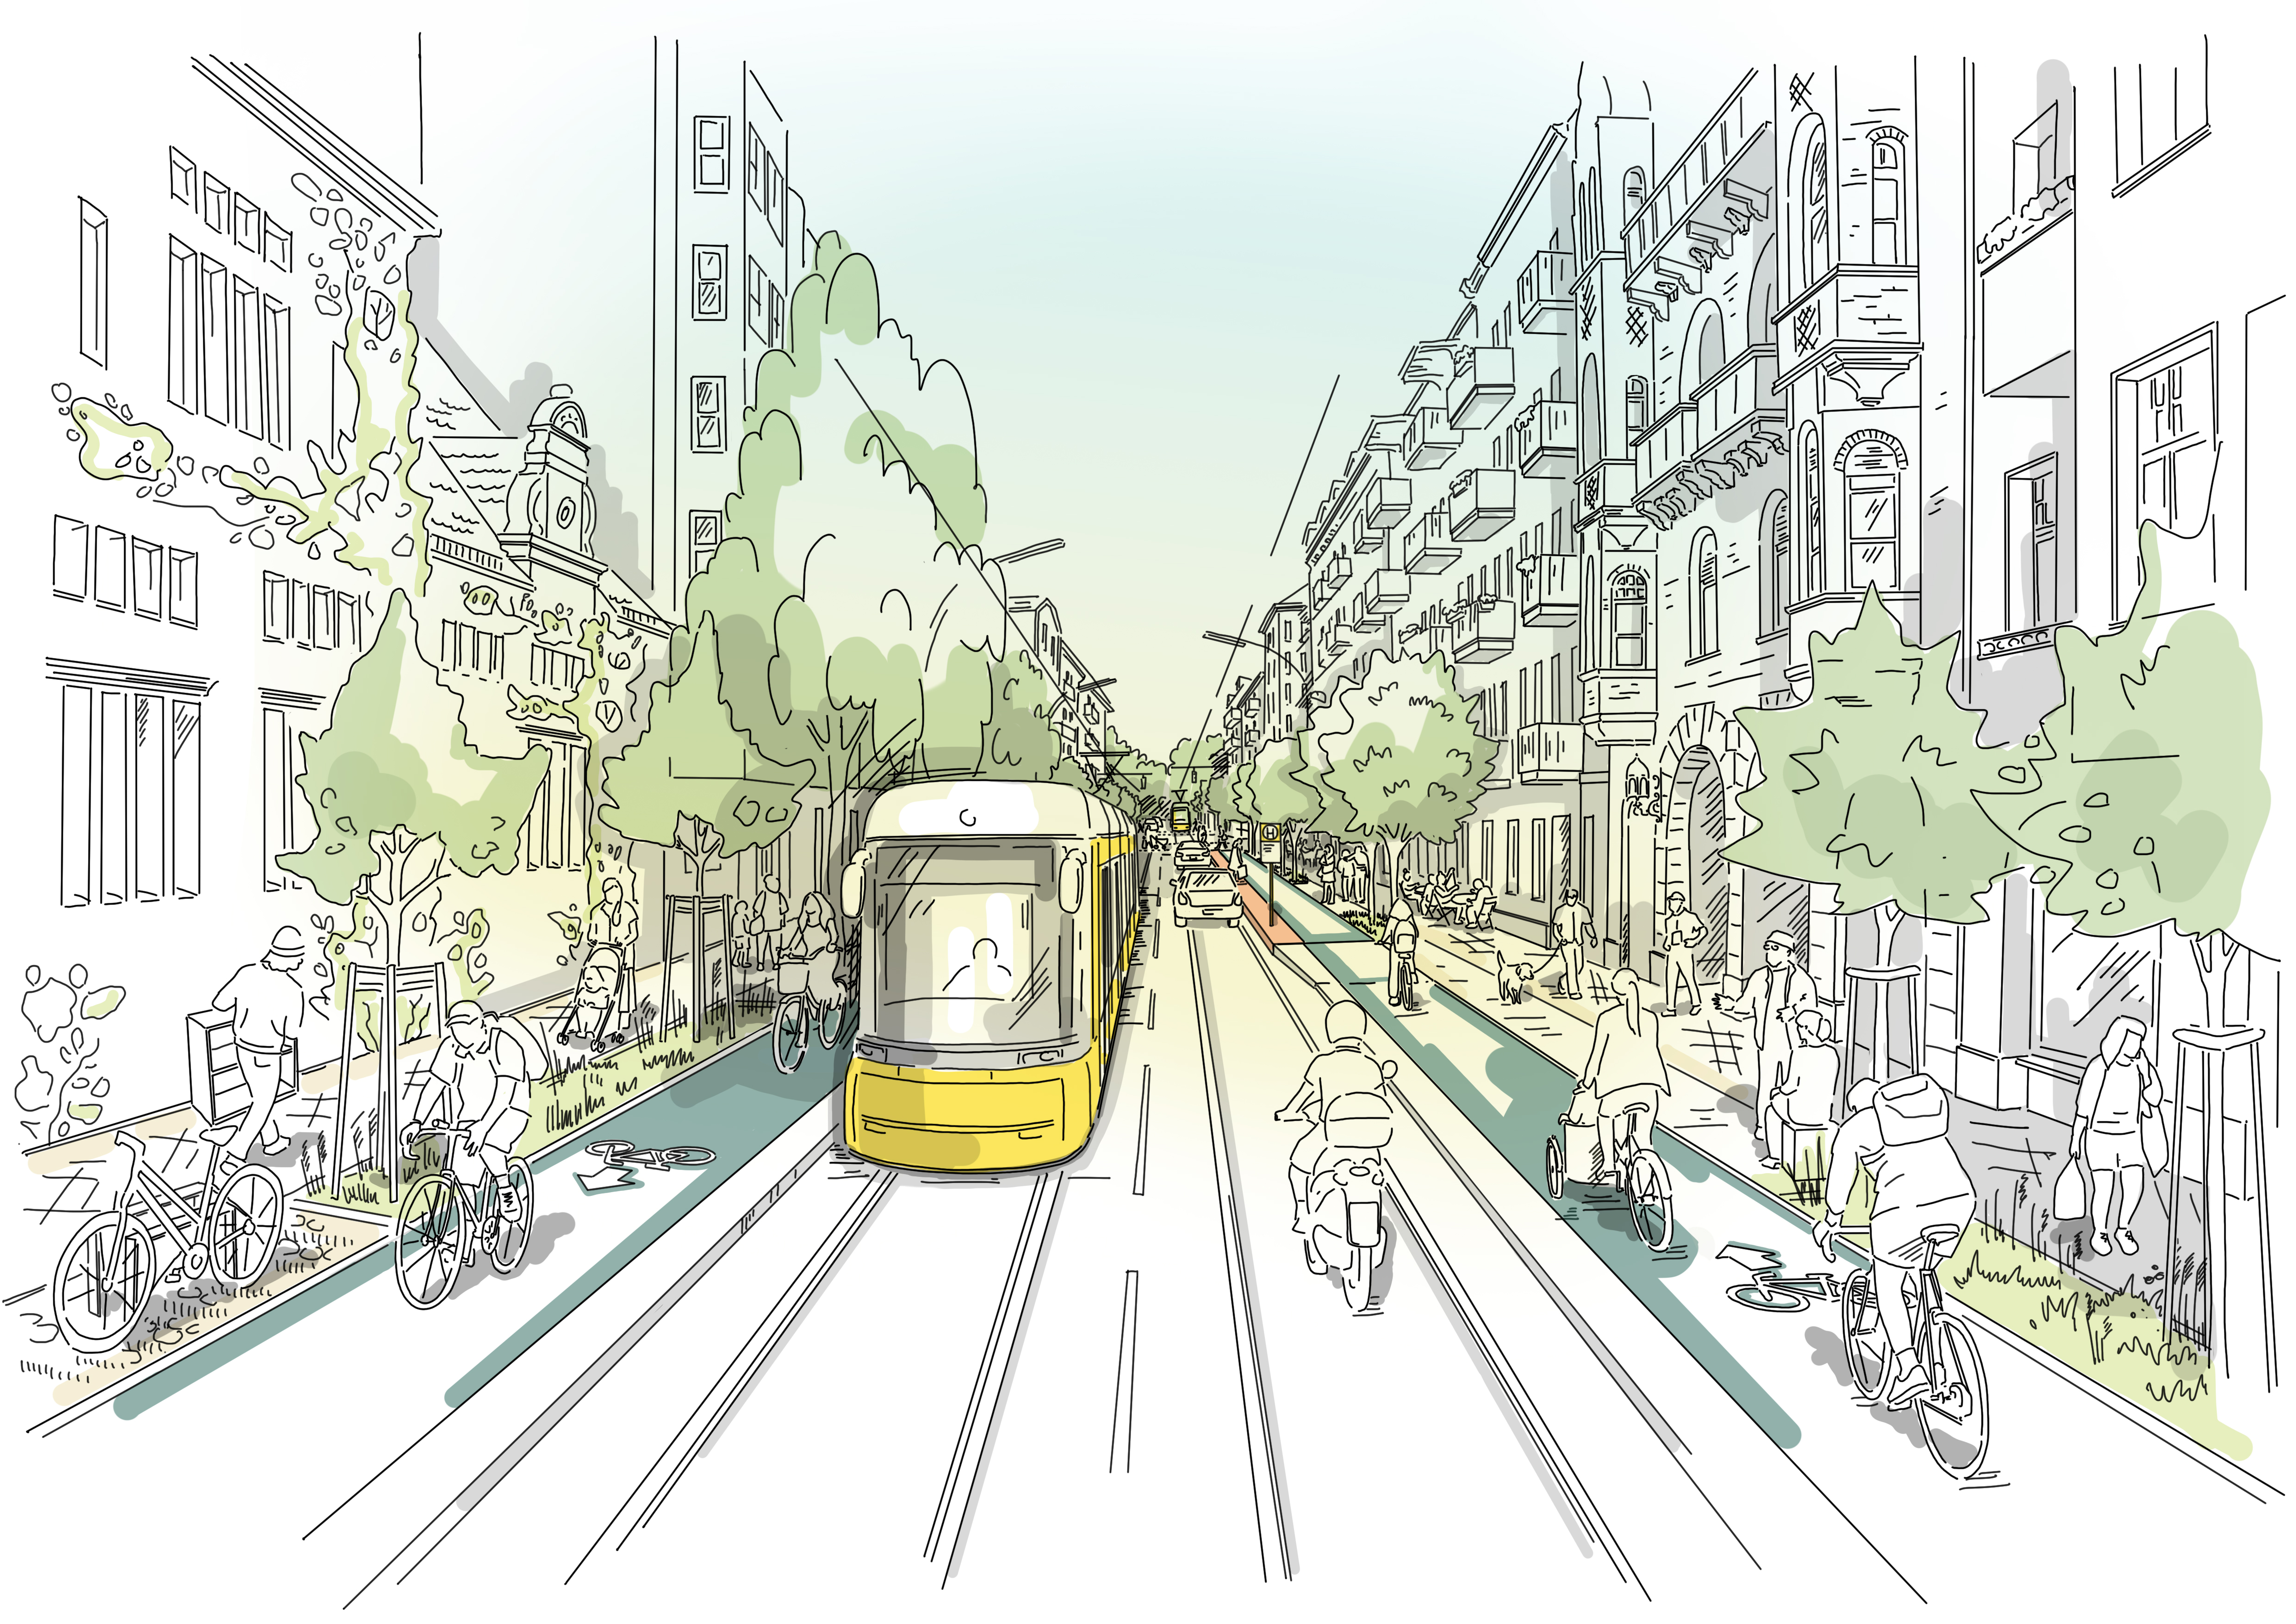 Diese Abbildung zeit eine skizzenhafte Darstellung der Straßenbahnführung nach der Fertigstellung des Projekts